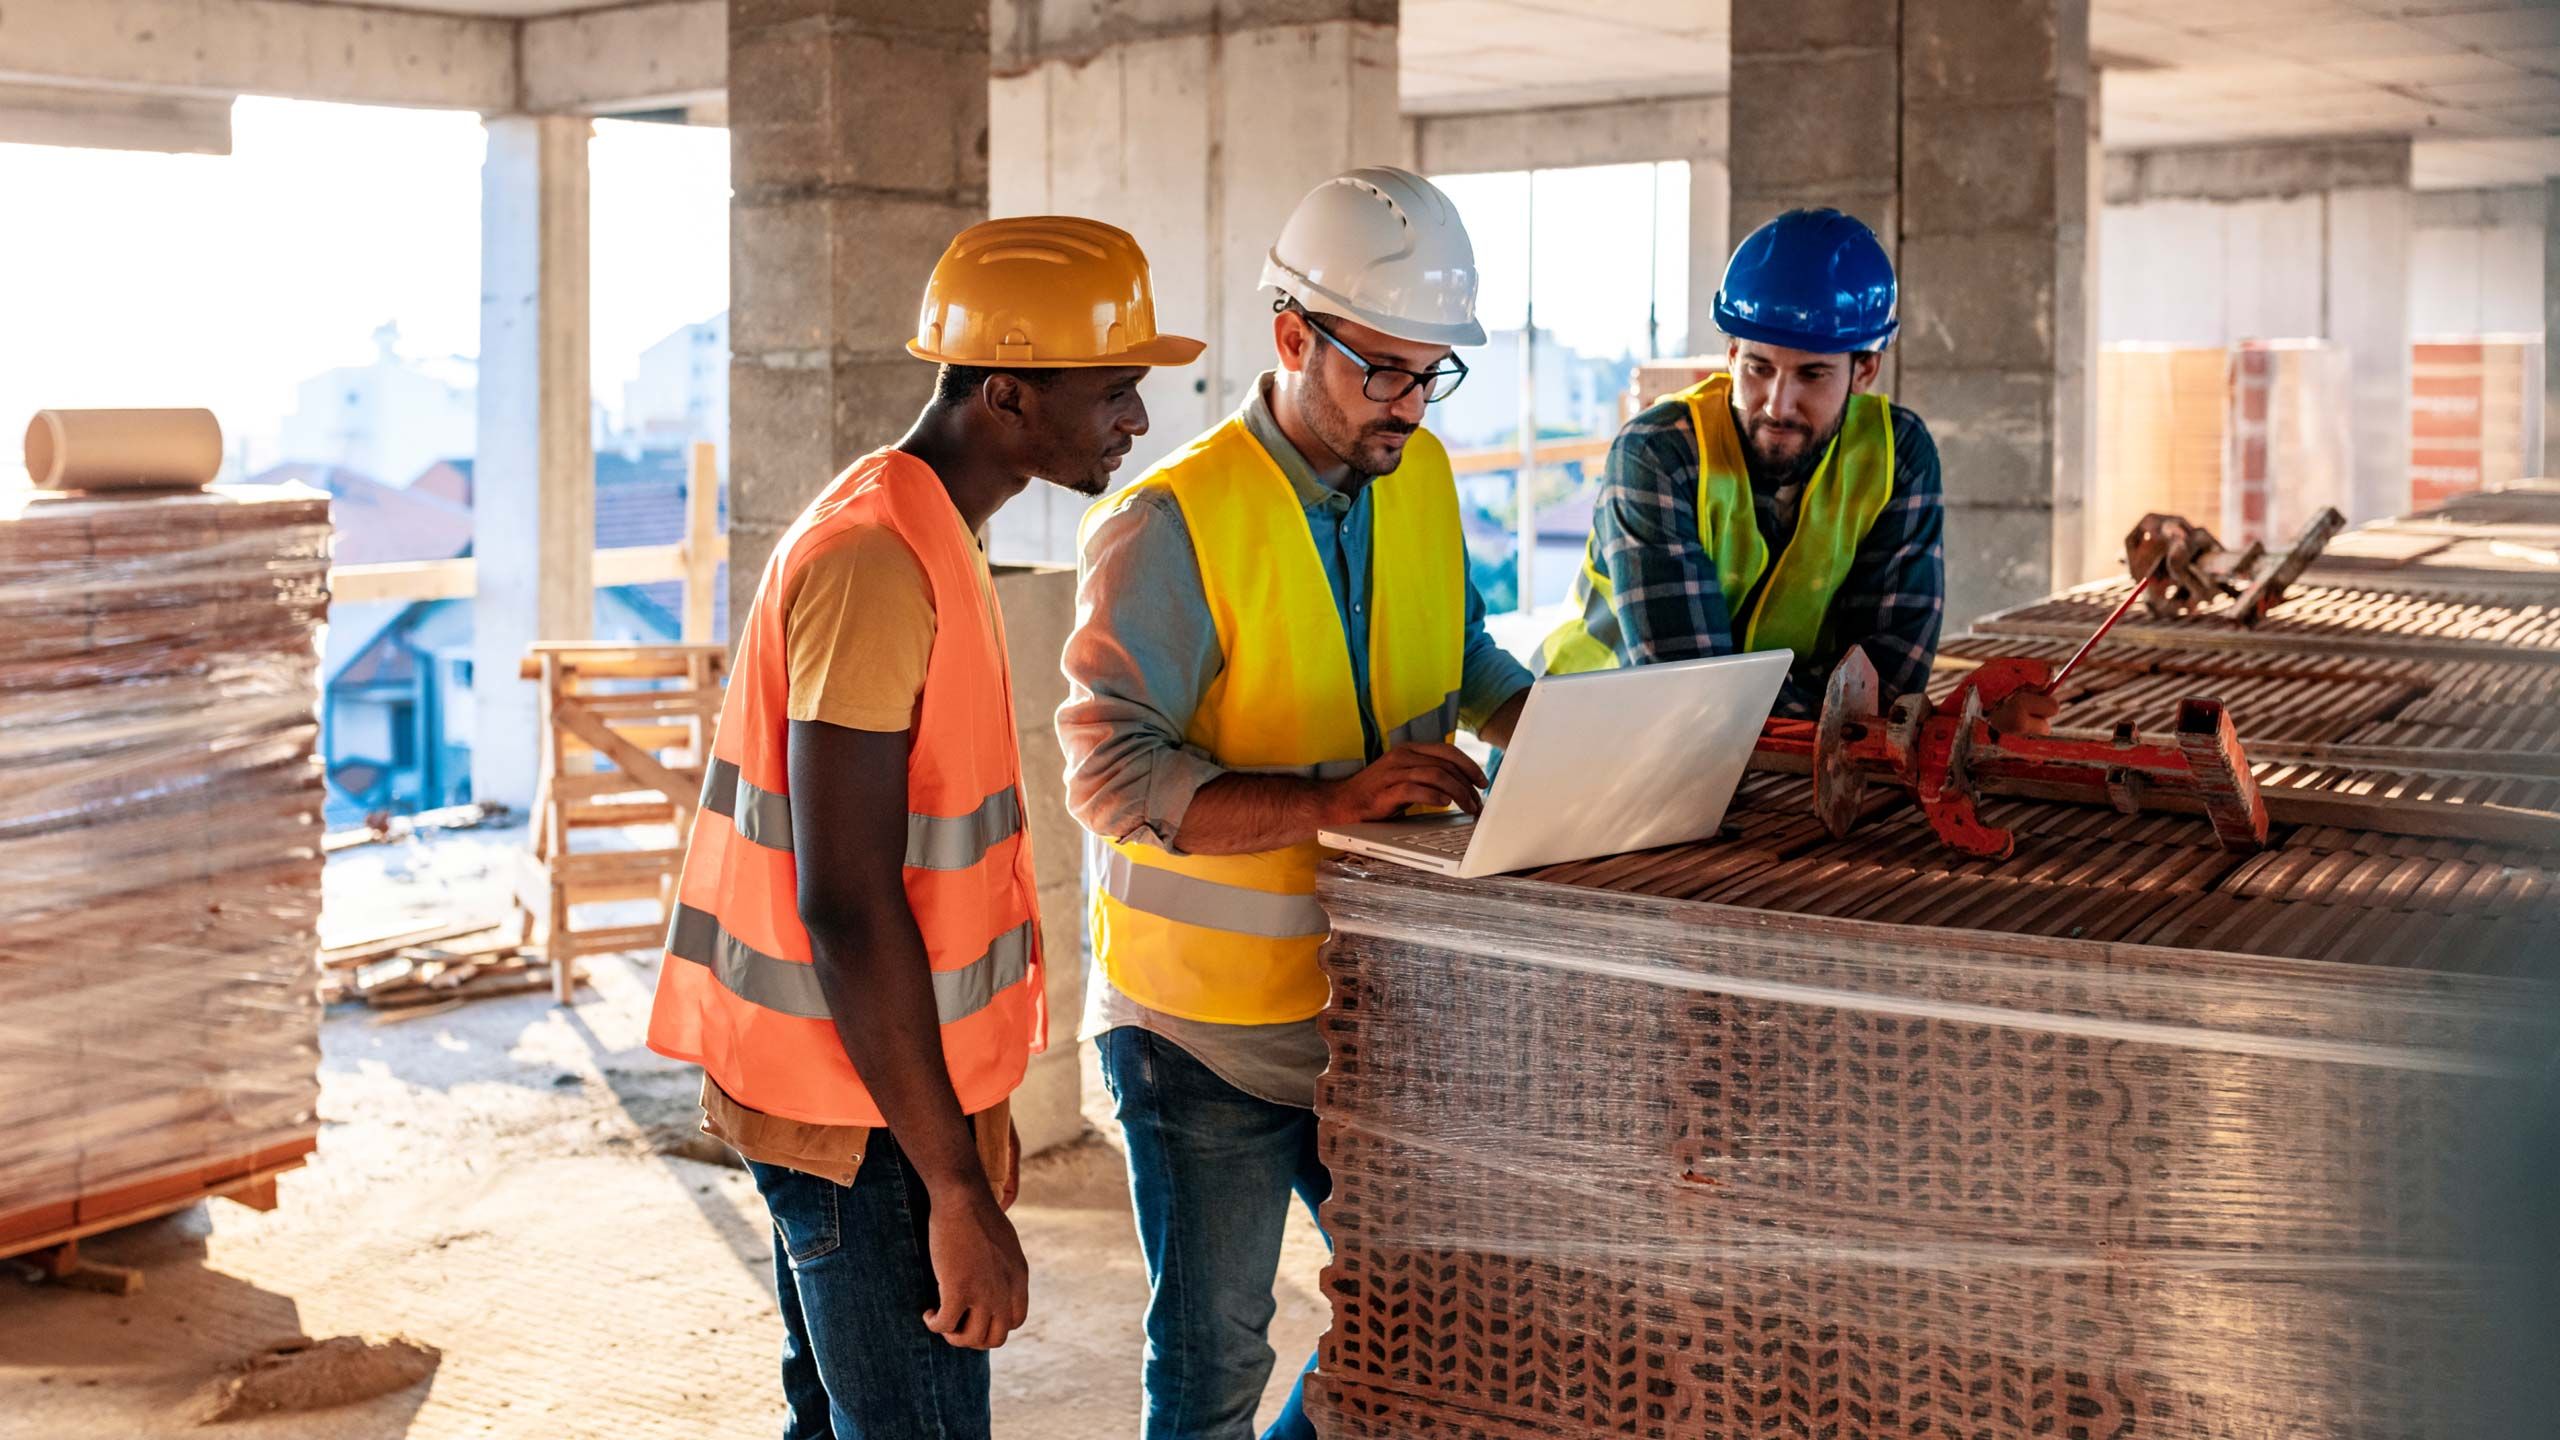 Três trabalhadores da construção civil usando capacetes e coletes de segurança olhando para um laptop